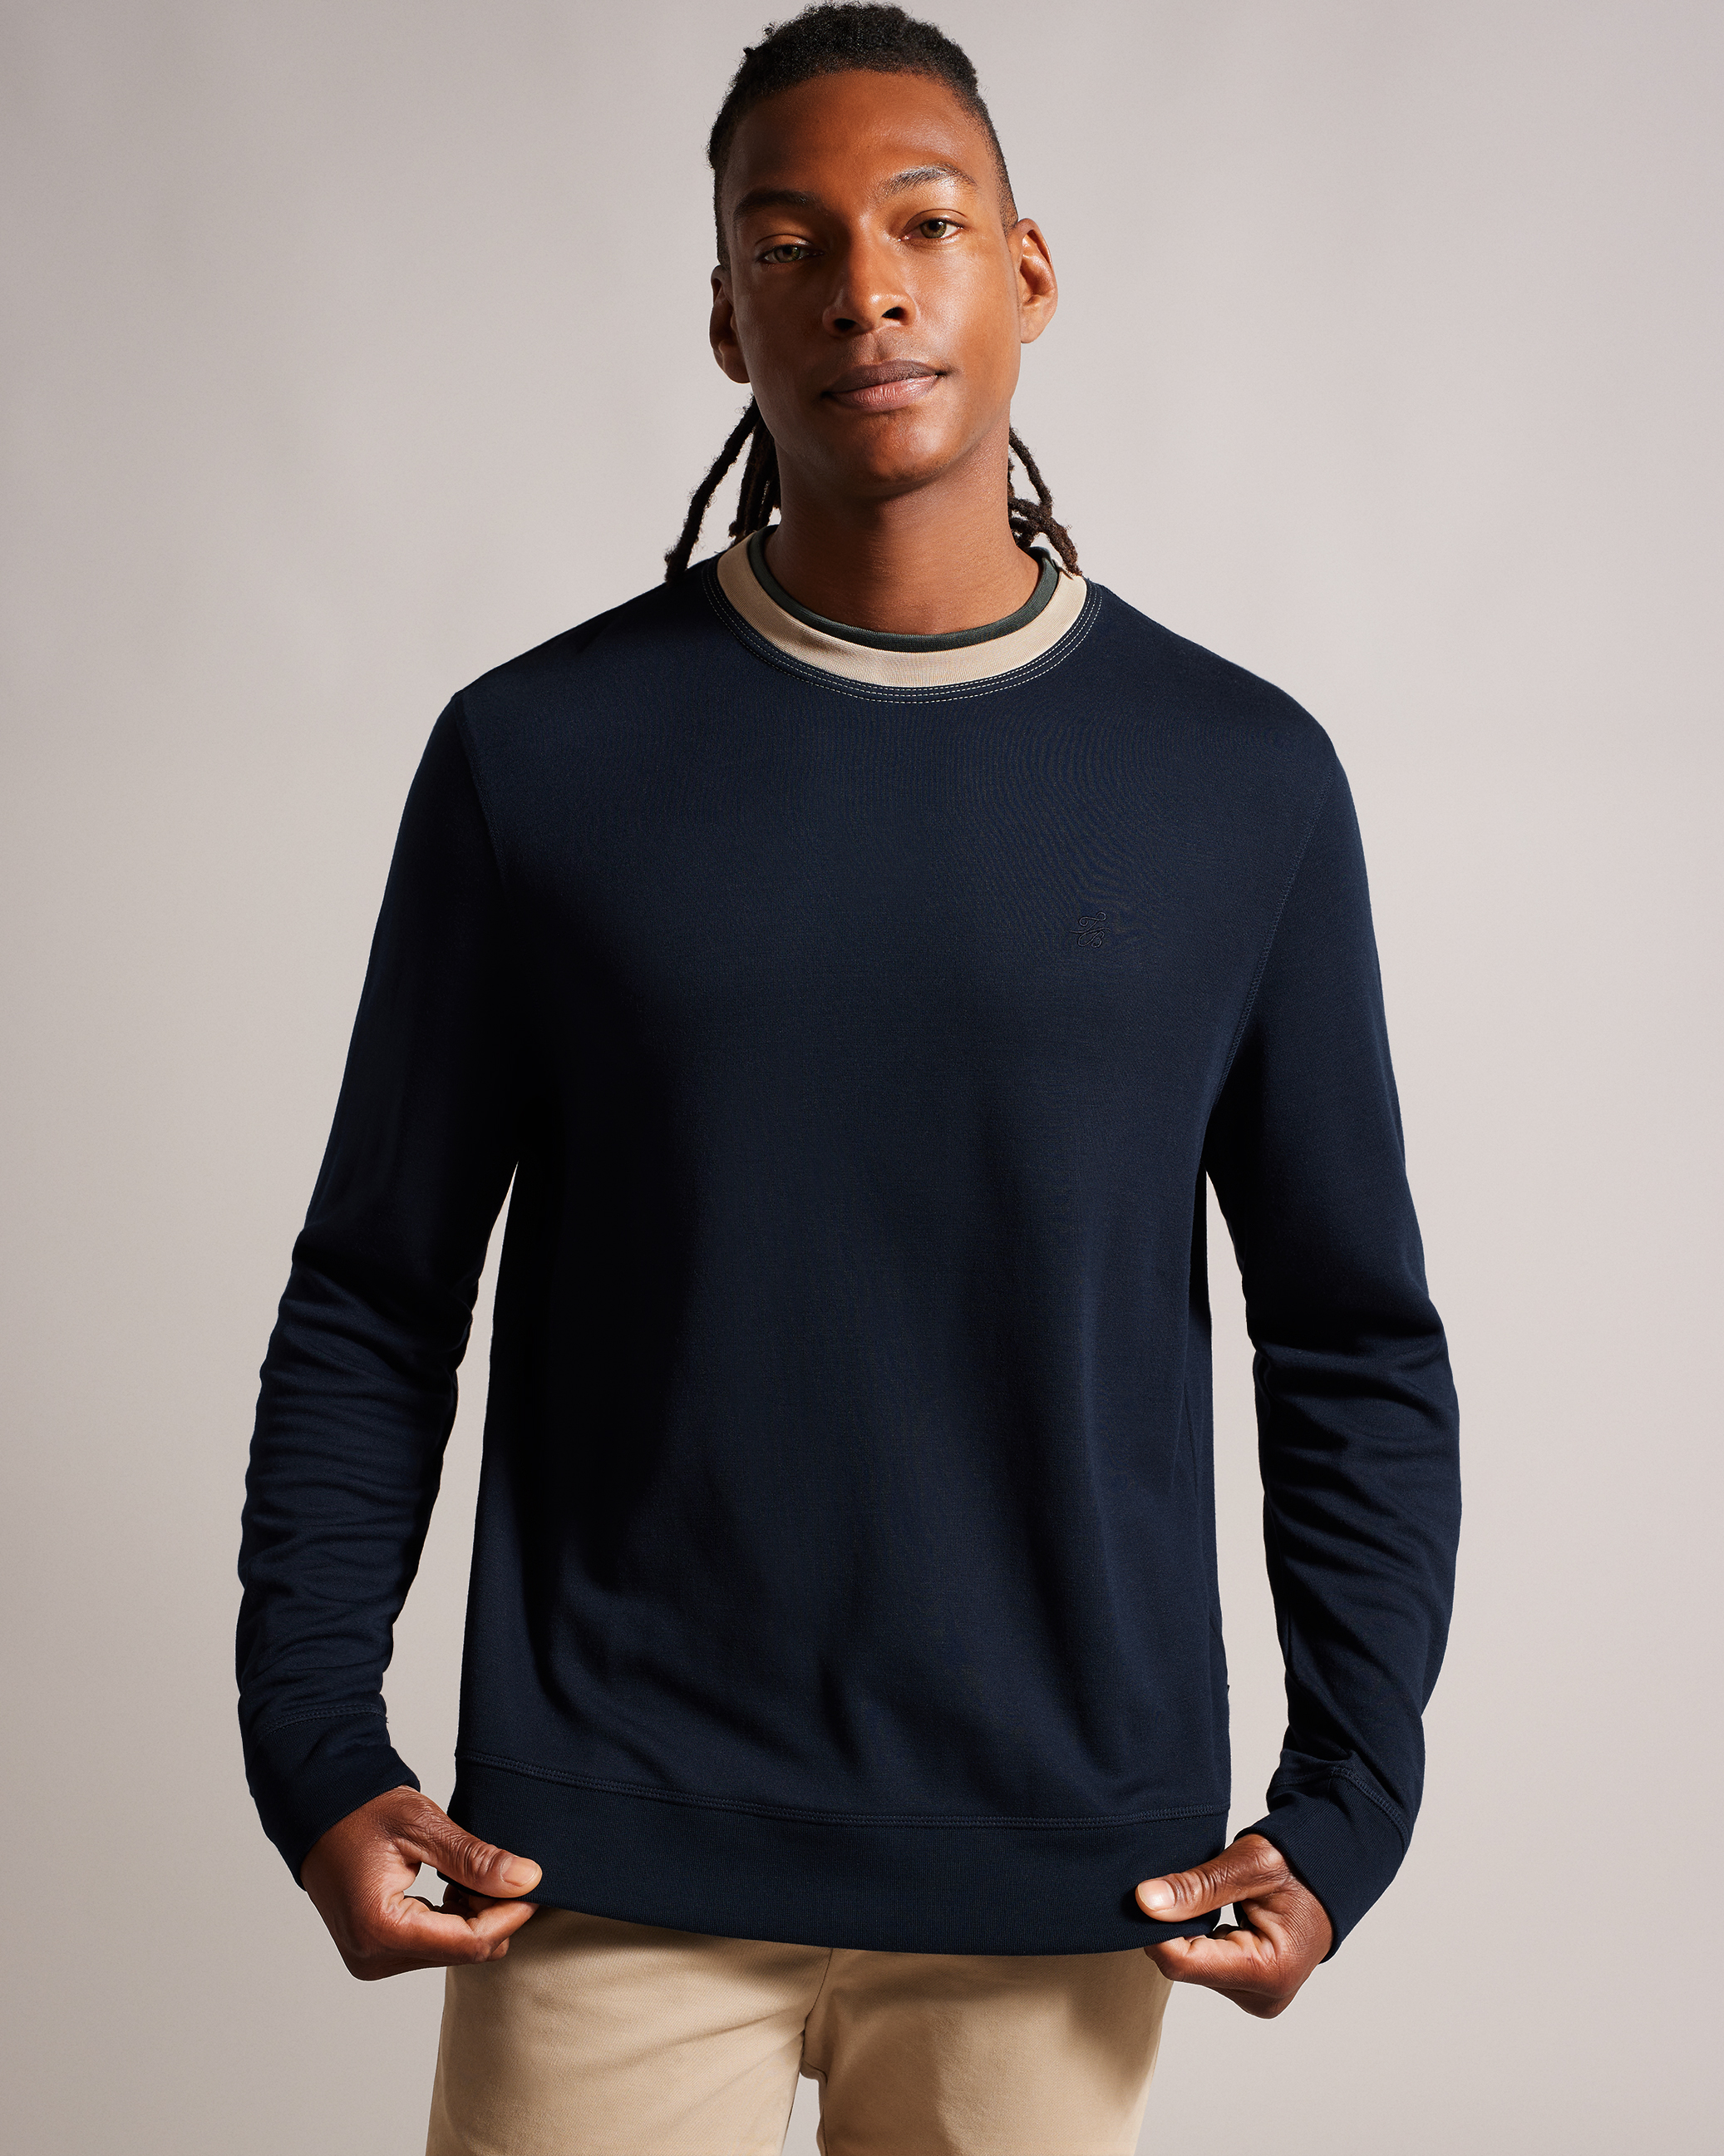 Cowl Neck Hoodie For Men Sweatshirt in Navy